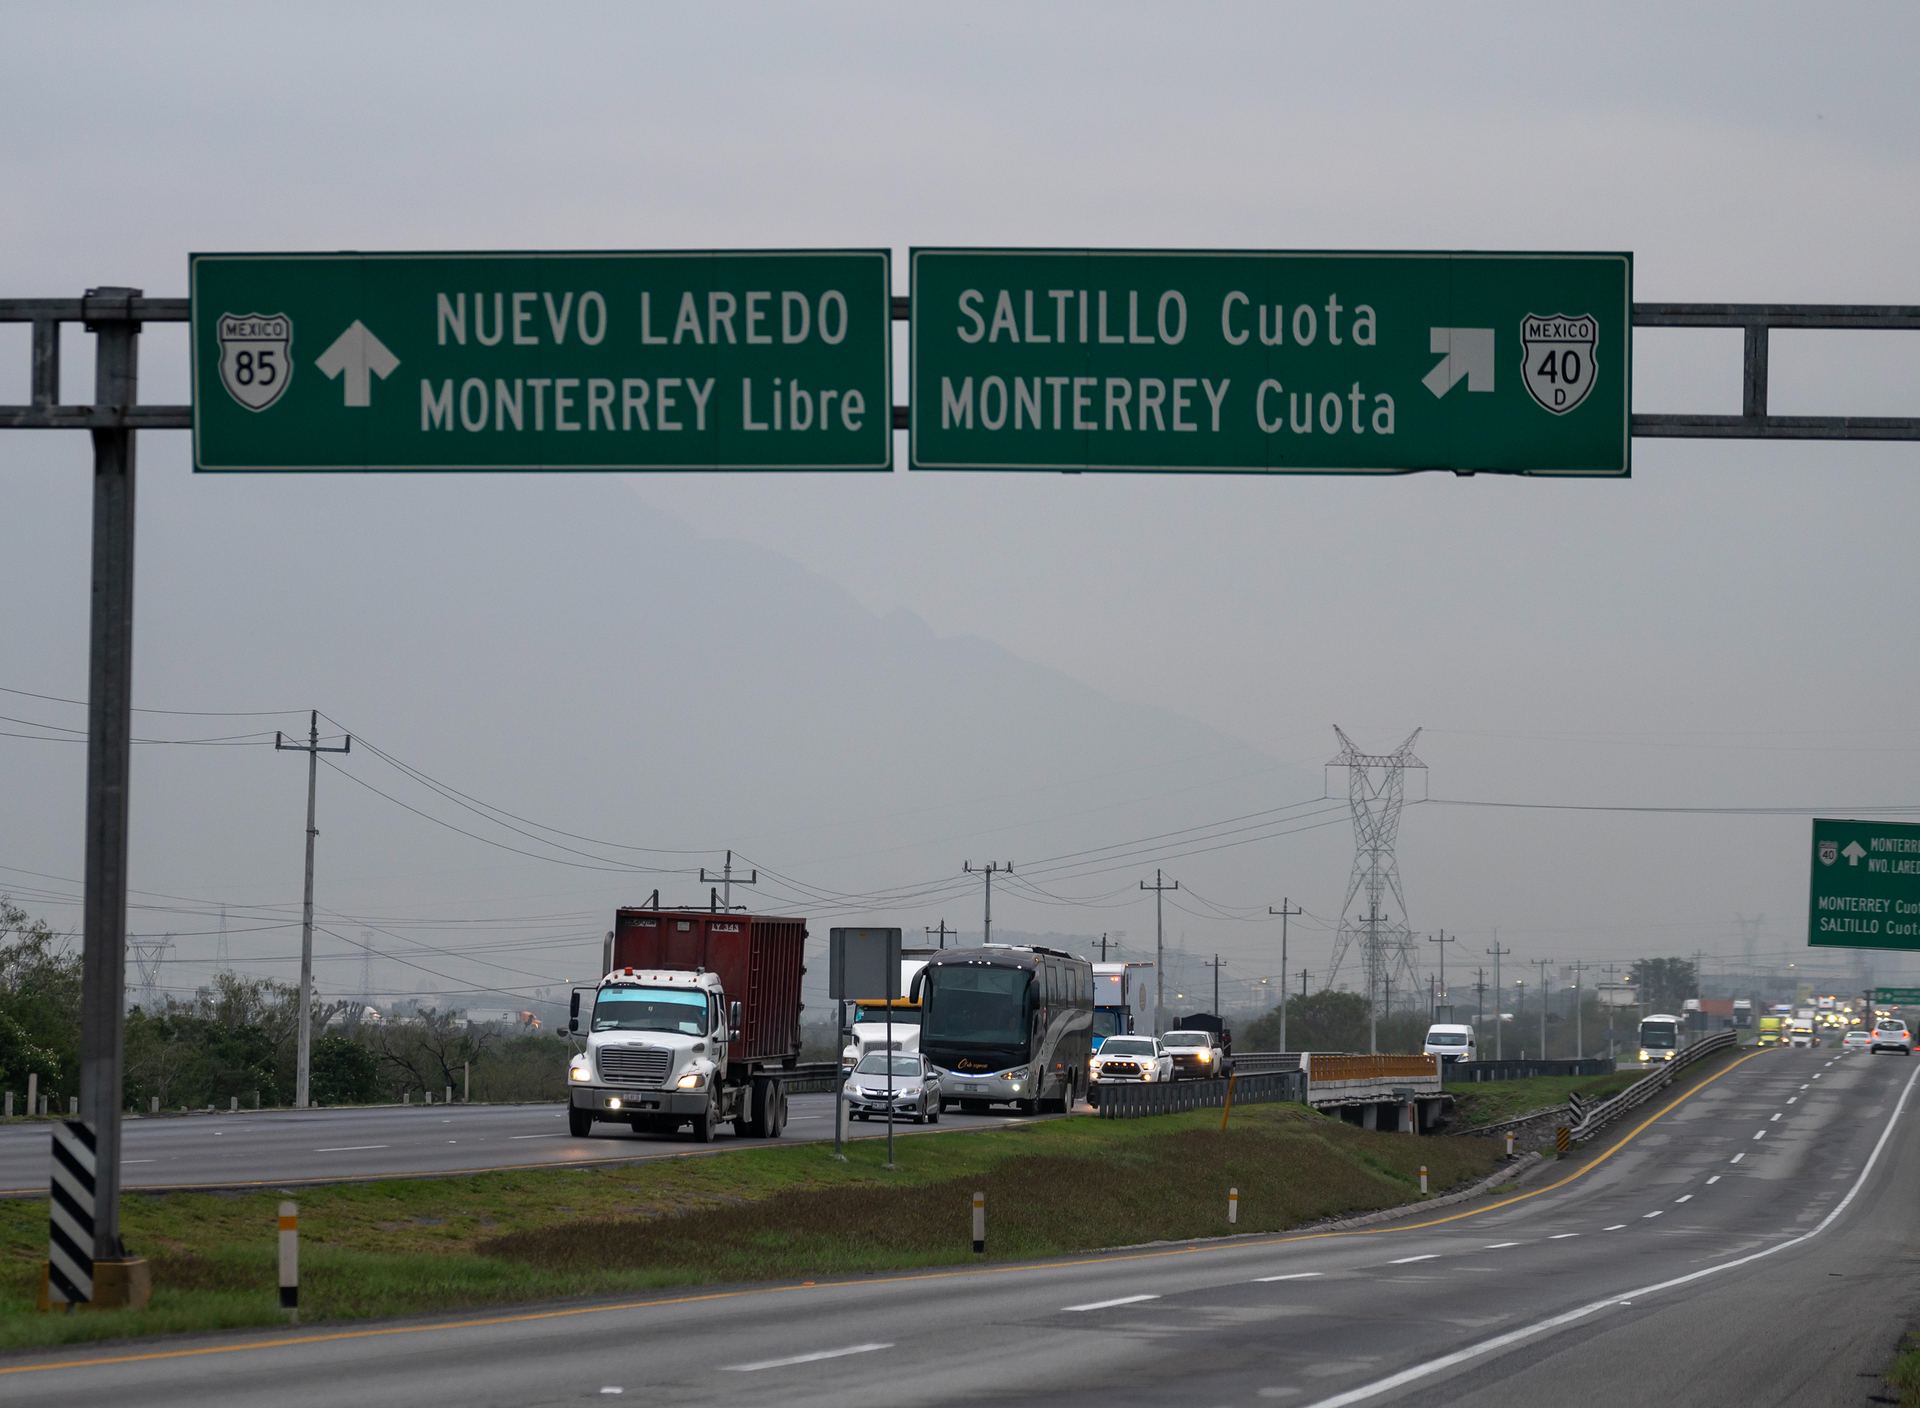 Propietarios especulan sobre la llegada de empresas a la región Sureste de Coahuila tras anuncio de Tesla